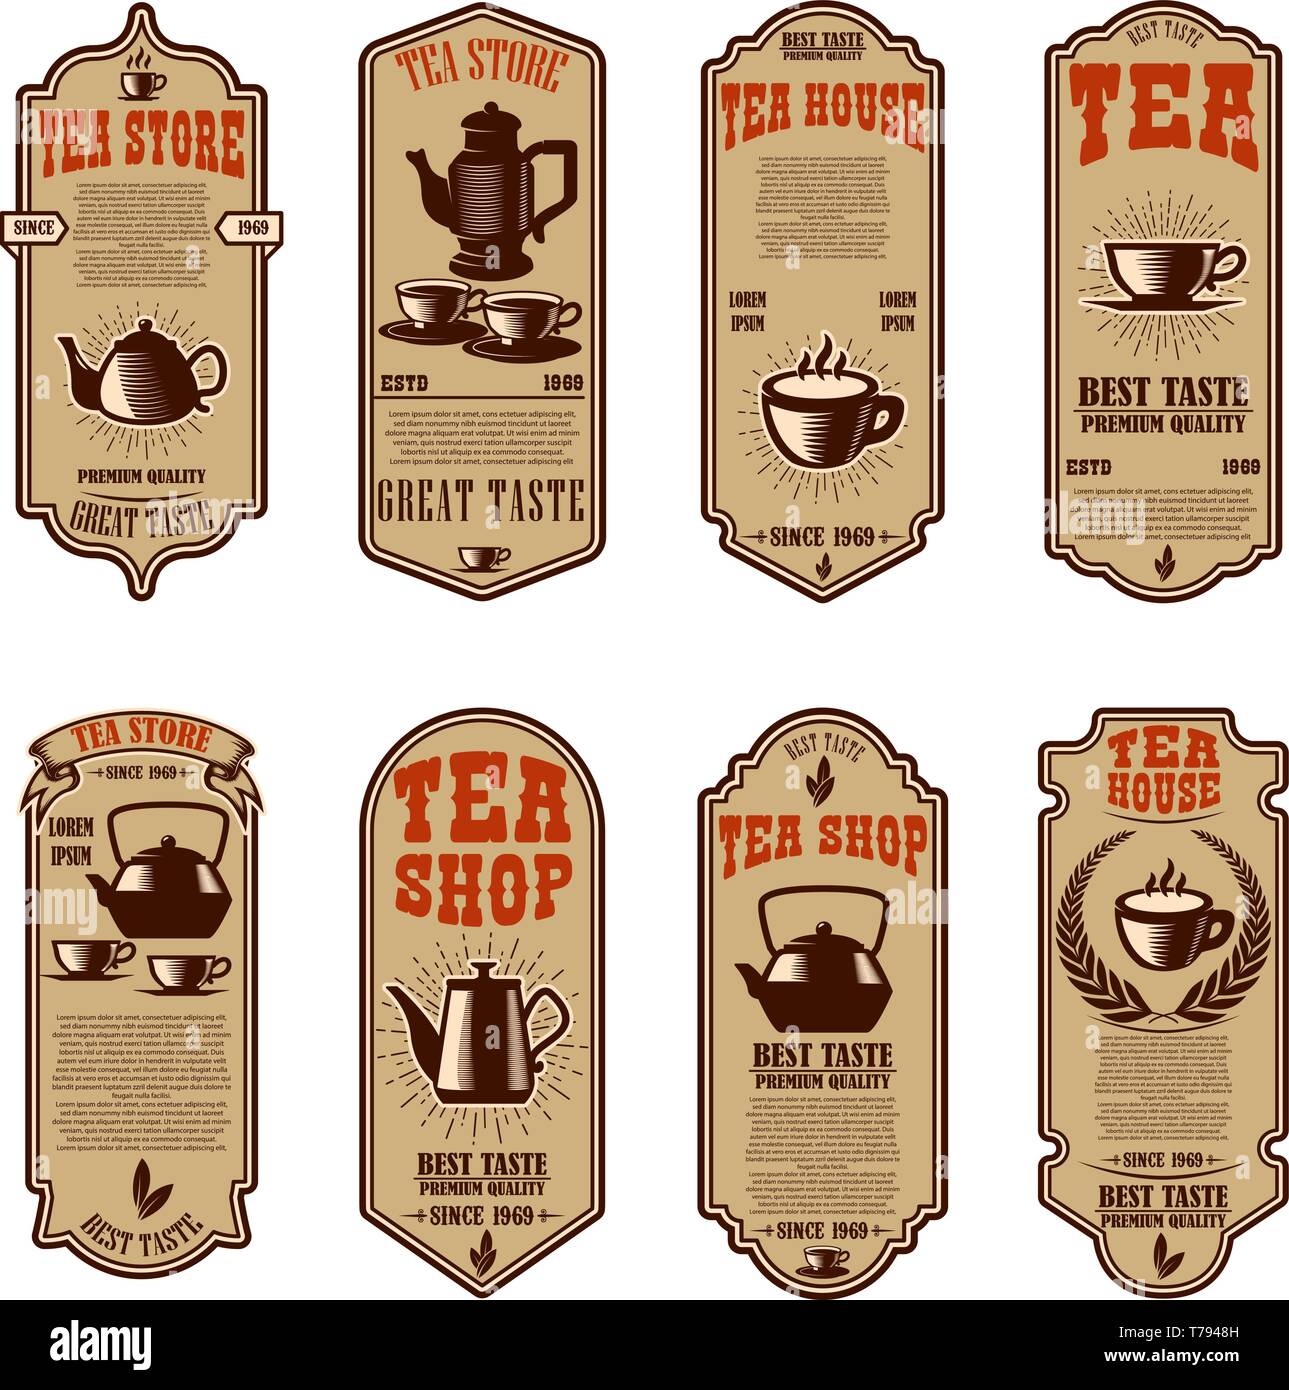 Vintage tea shop flyer templates. Design elements for logo, label, sign,  badge. Vector illustration Stock Vector Image & Art - Alamy